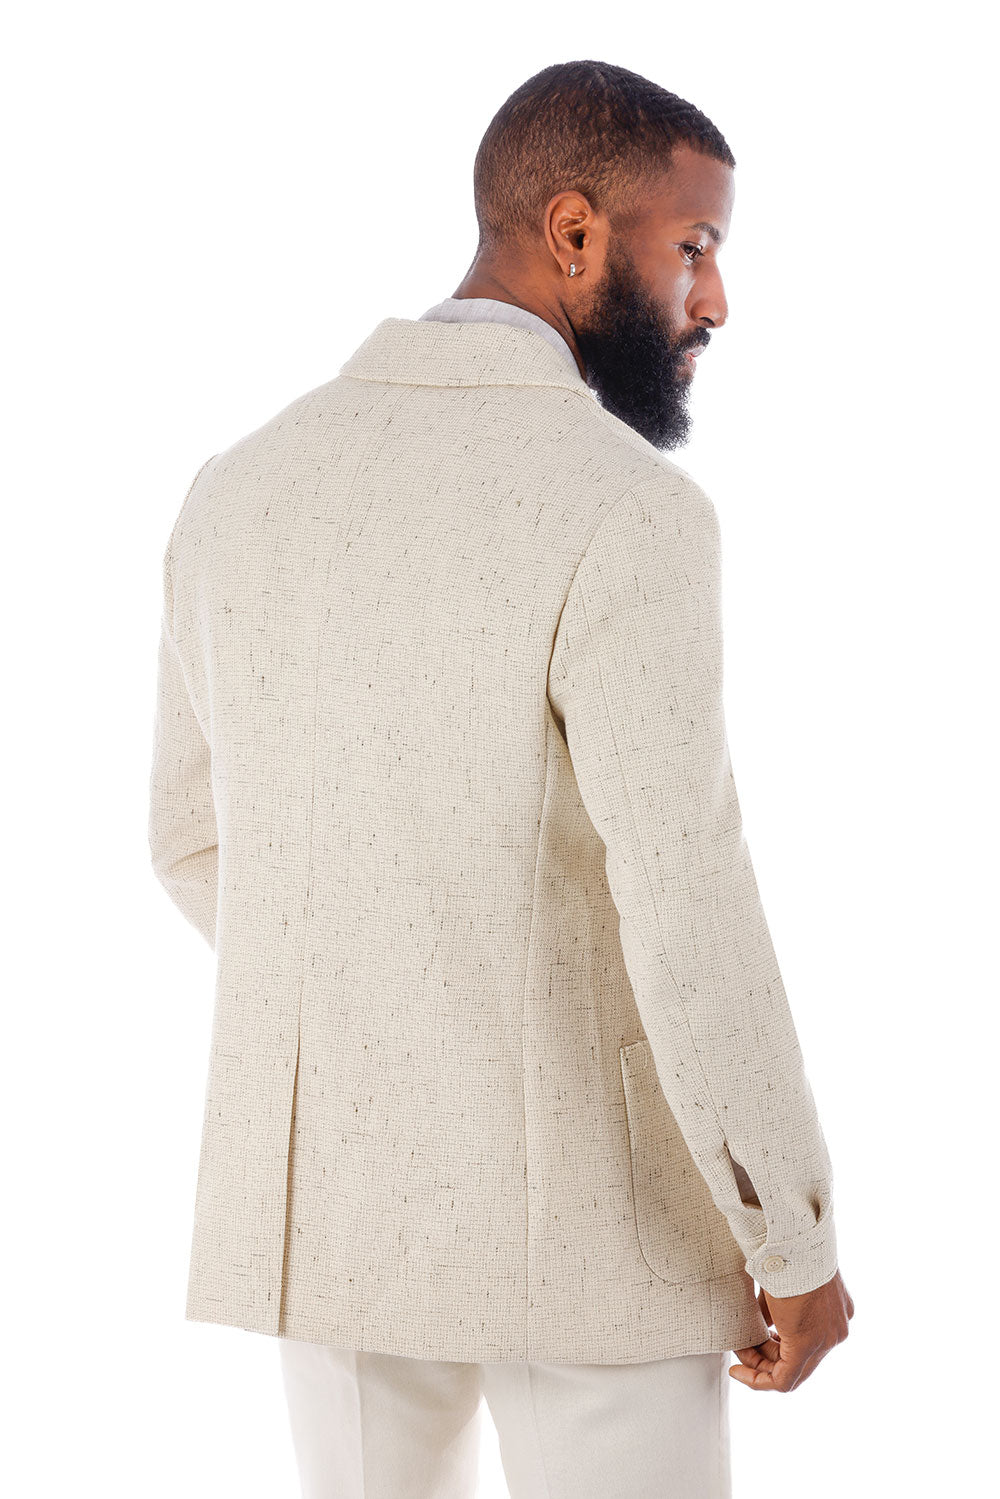 Barabas Men's Wool Texture Polo Collar Blazer 4BL33 Cream